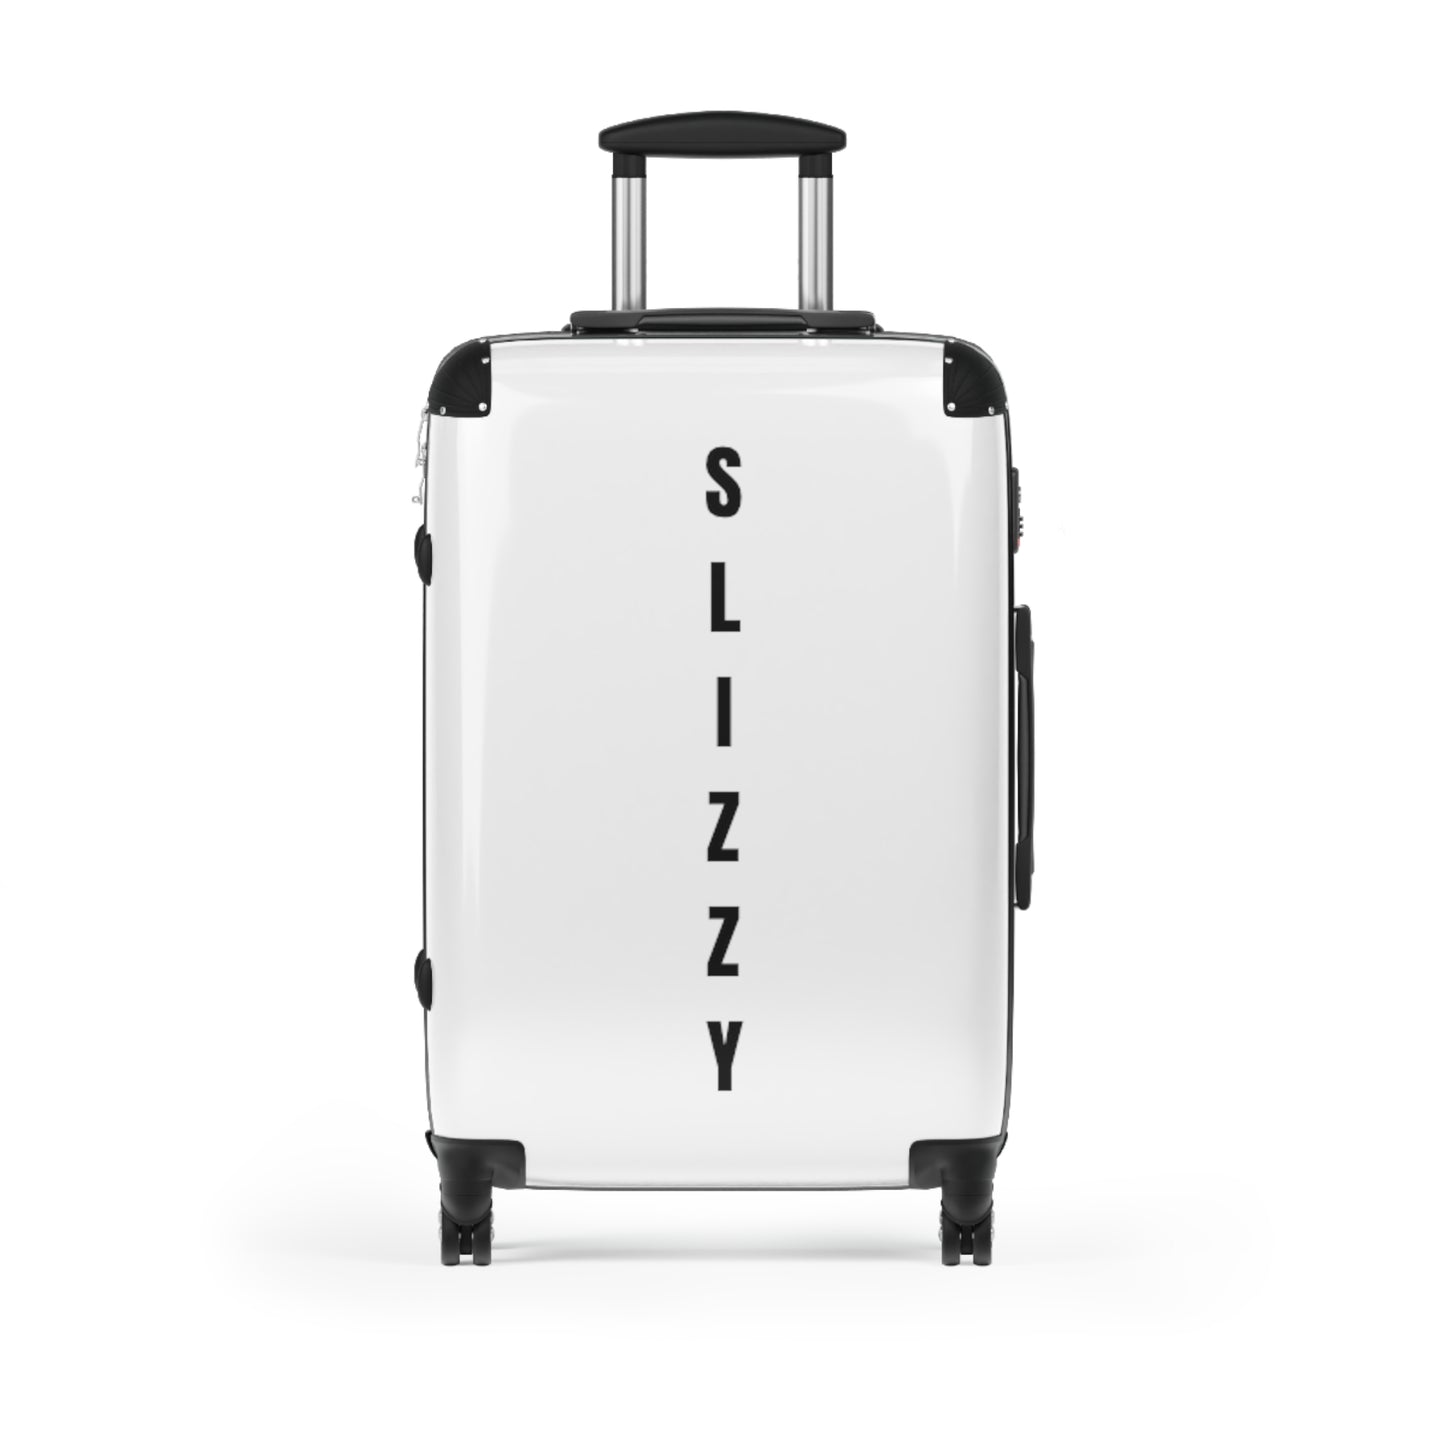 "Slizzy" Suitcase